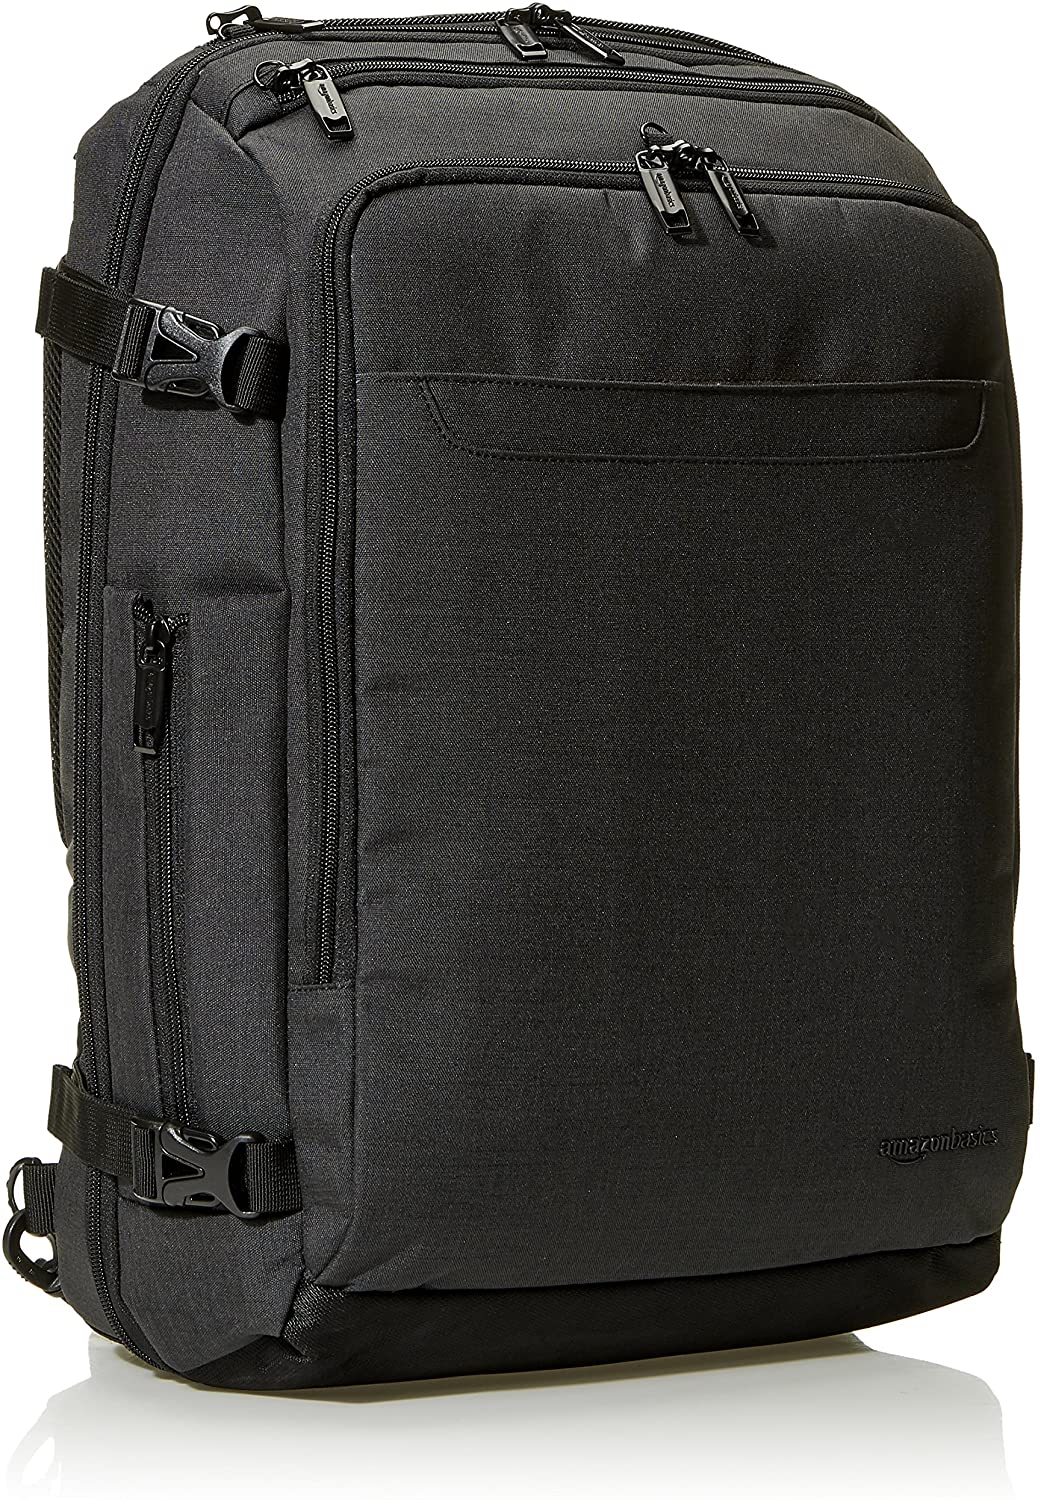  Light Travel Backpack